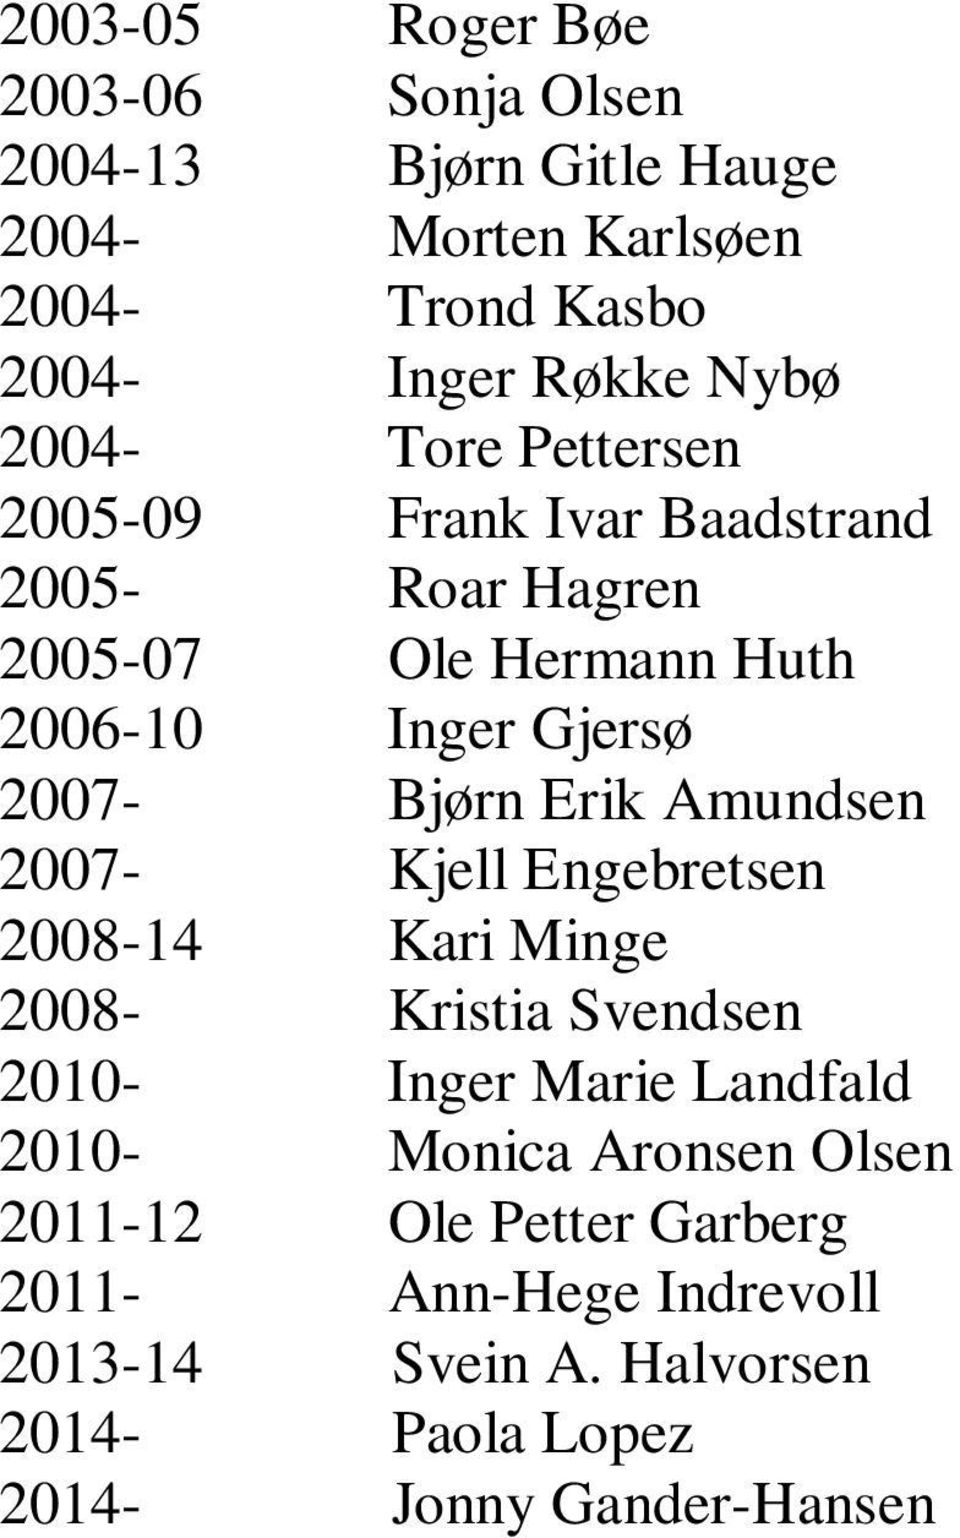 Erik Amundsen 2007- Kjell Engebretsen 2008-14 Kari Minge 2008- Kristia Svendsen 2010- Inger Marie Landfald 2010- Monica Aronsen